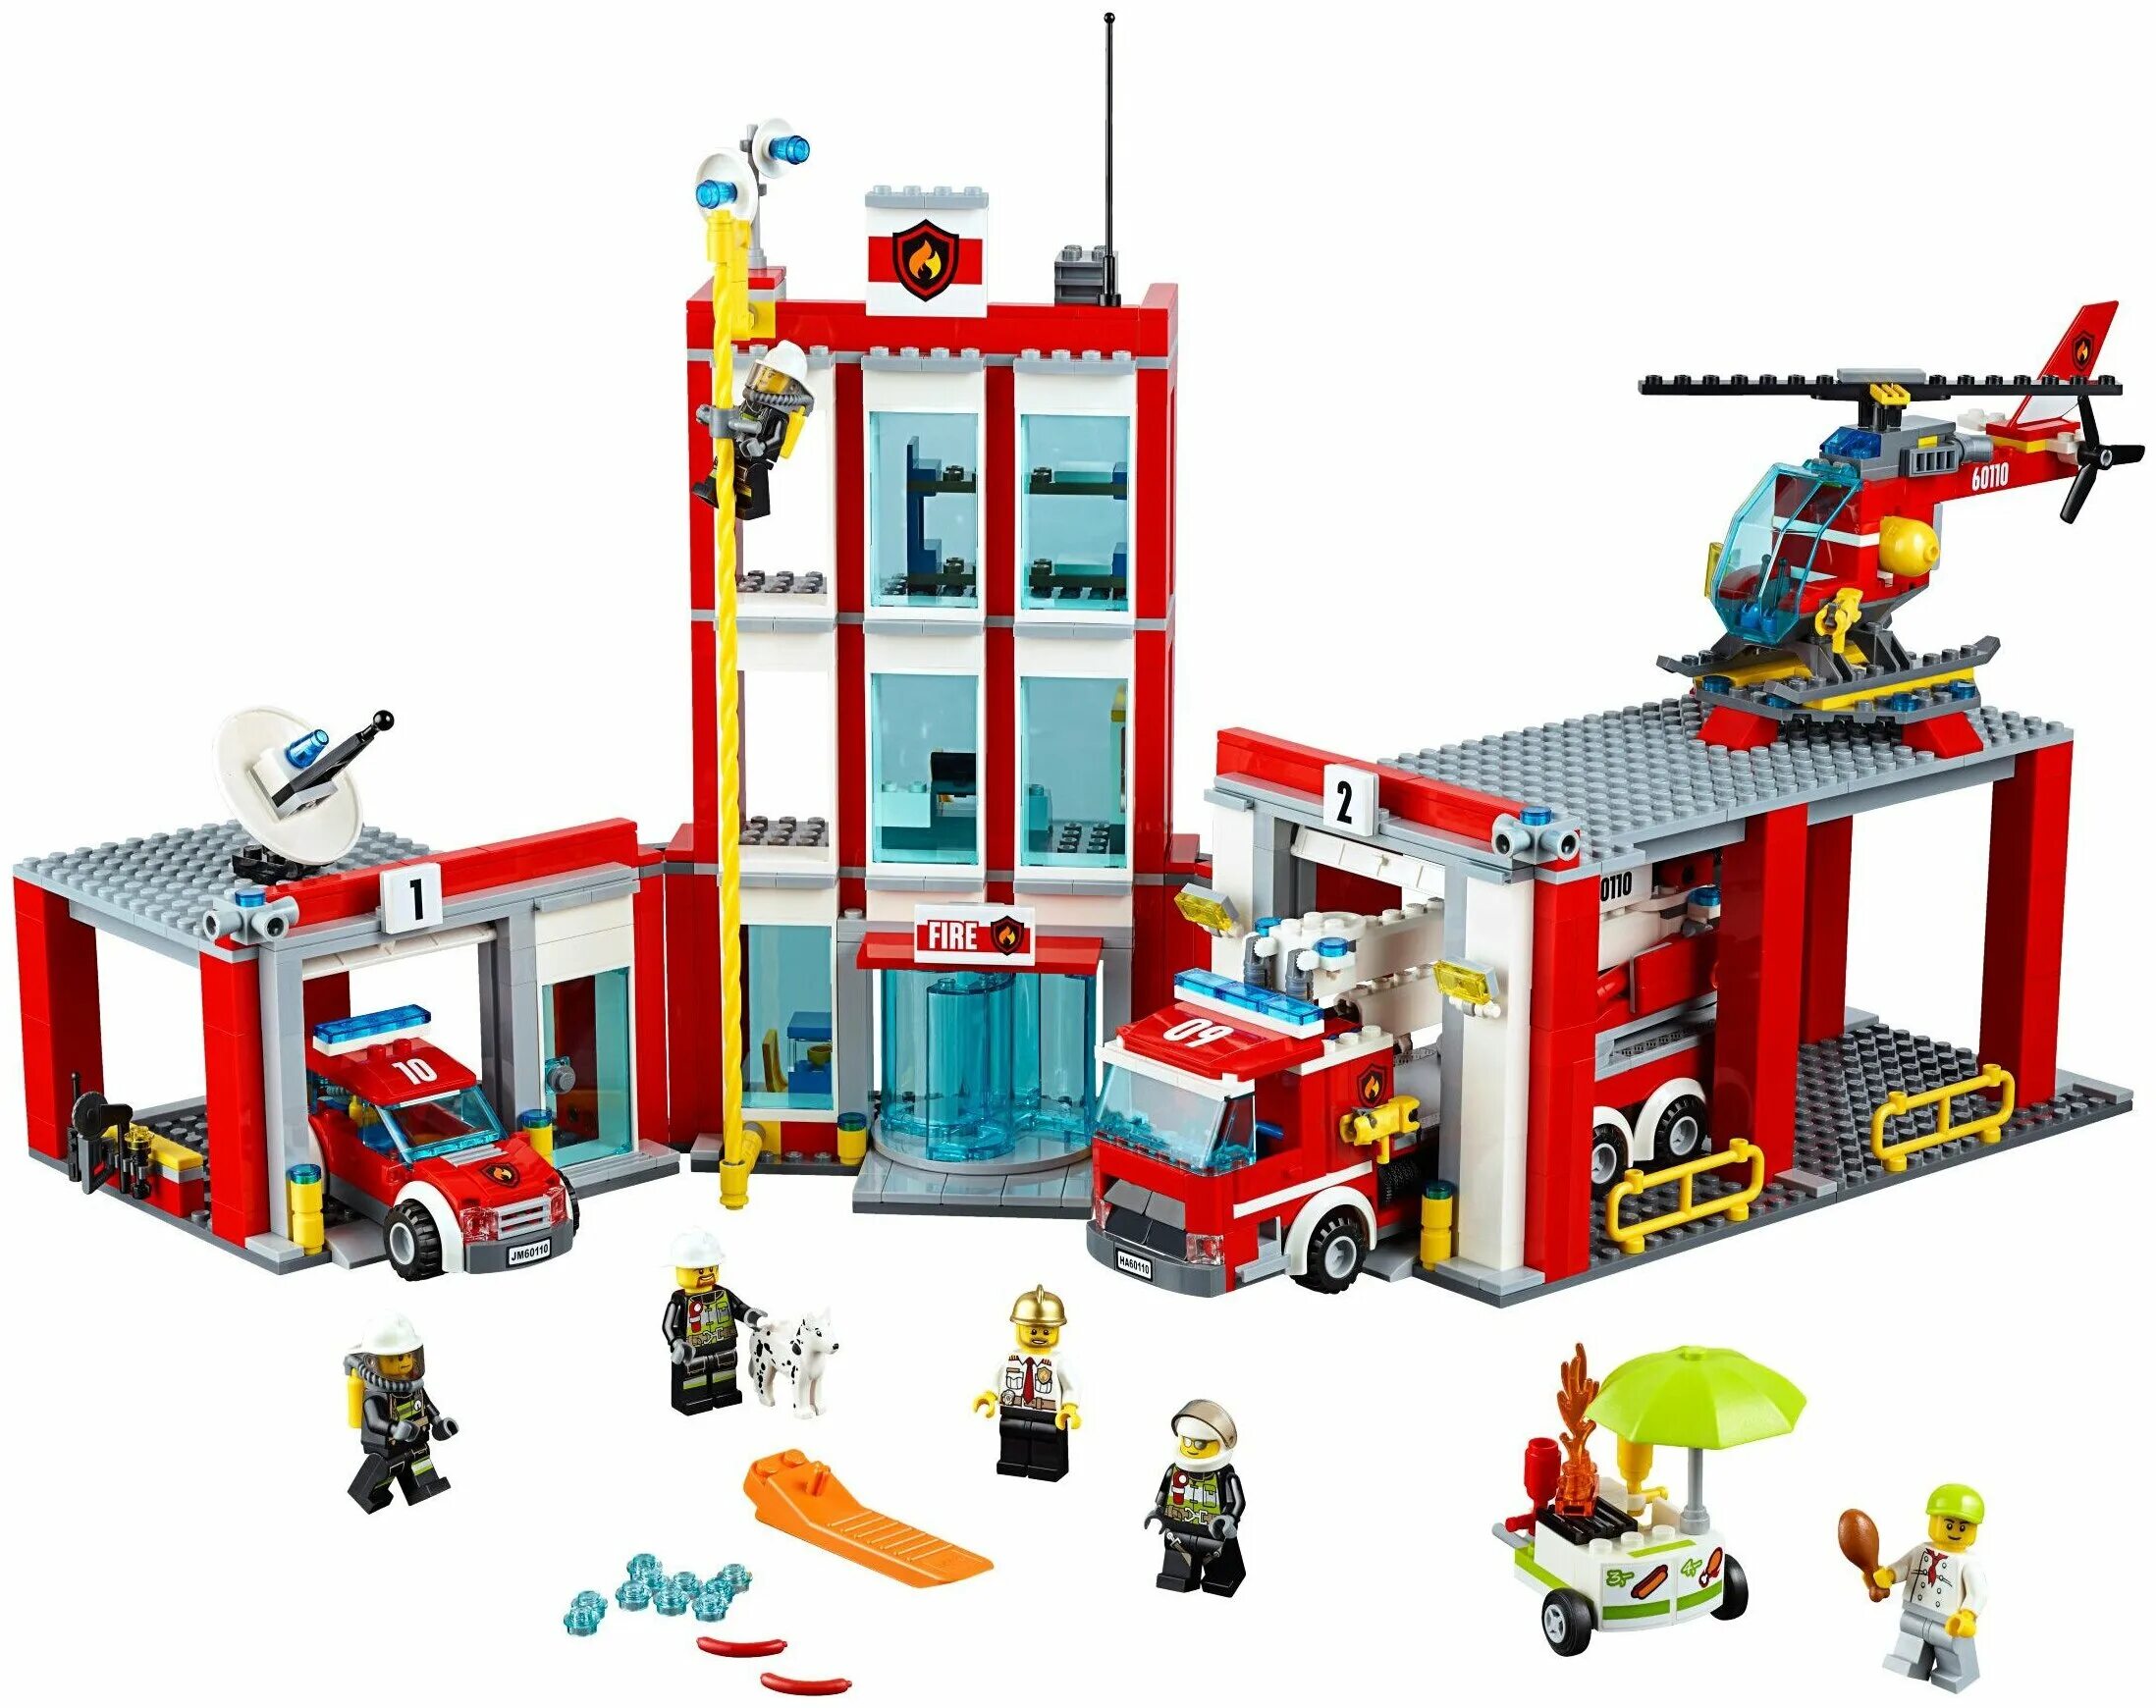 LEGO City 60110. Лего Сити пожарная станция 60110. Лего Сити 60110. LEGO City пожарная станция 60110. Сити пожарная